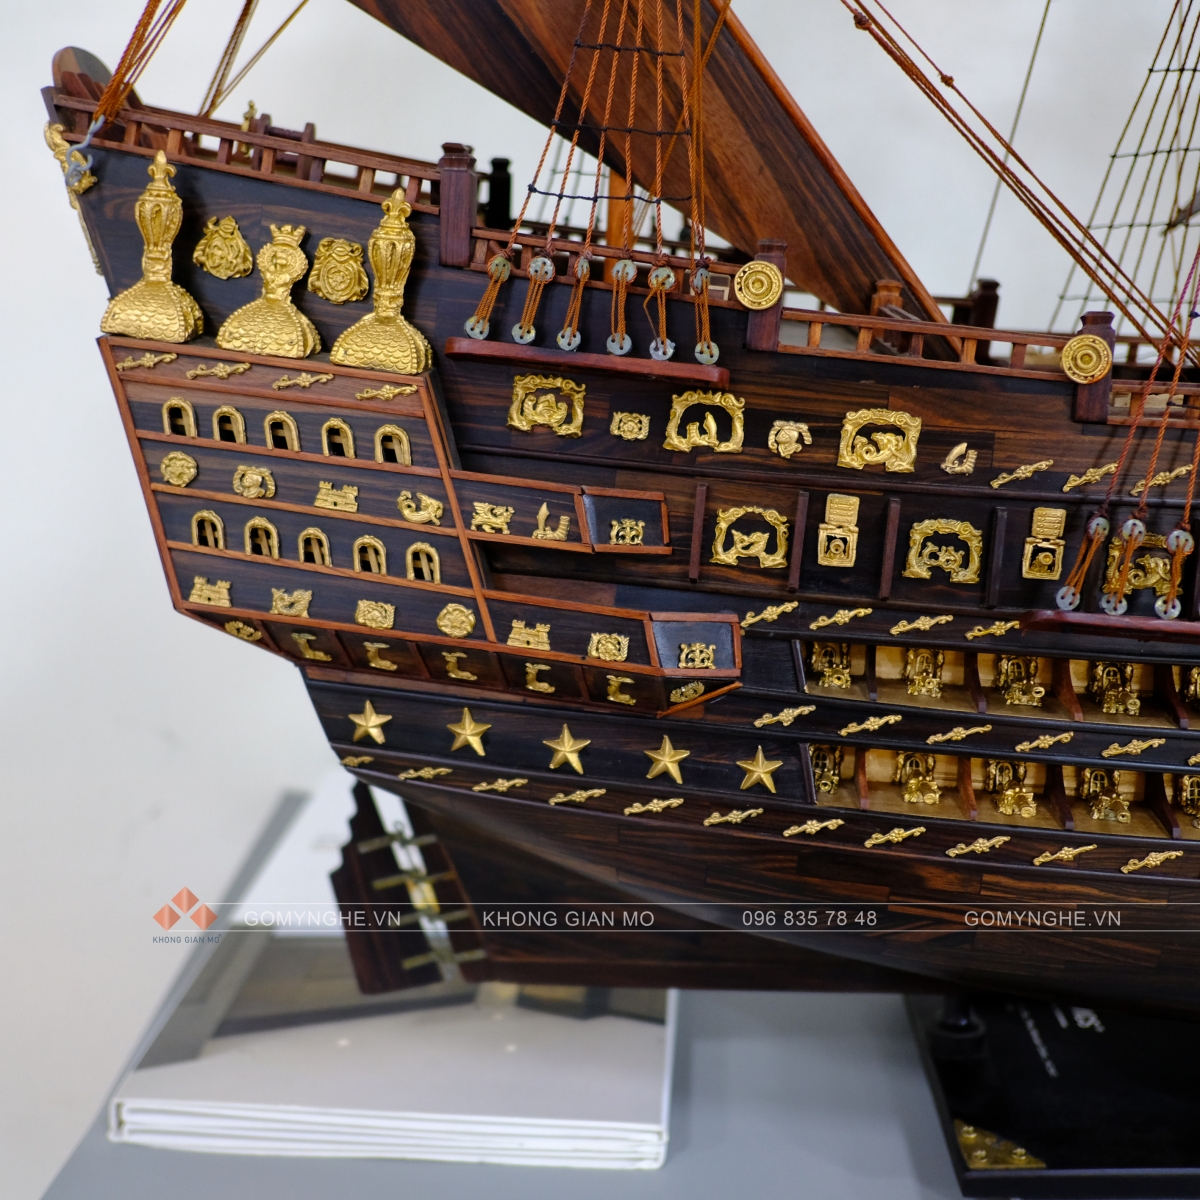 thuyền buồm gỗ mỹ nghệ hà nội quà tặng khách hàng độc đáo 